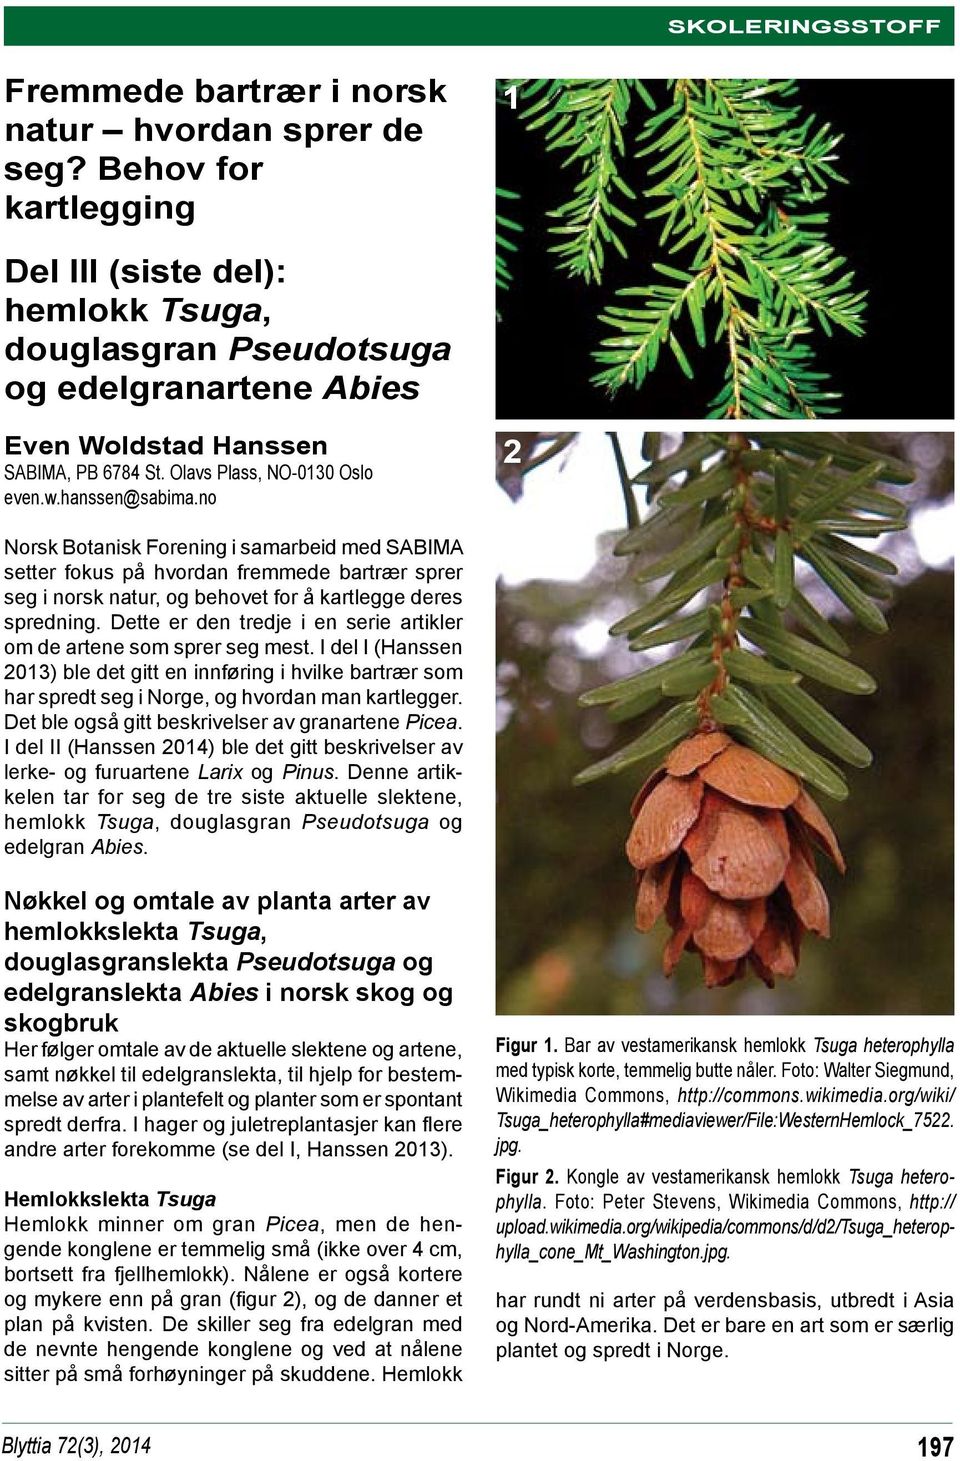 no 2 Norsk Botanisk Forening i samarbeid med SABIMA setter fokus på hvordan fremmede bartrær sprer seg i norsk natur, og behovet for å kartlegge deres spredning.